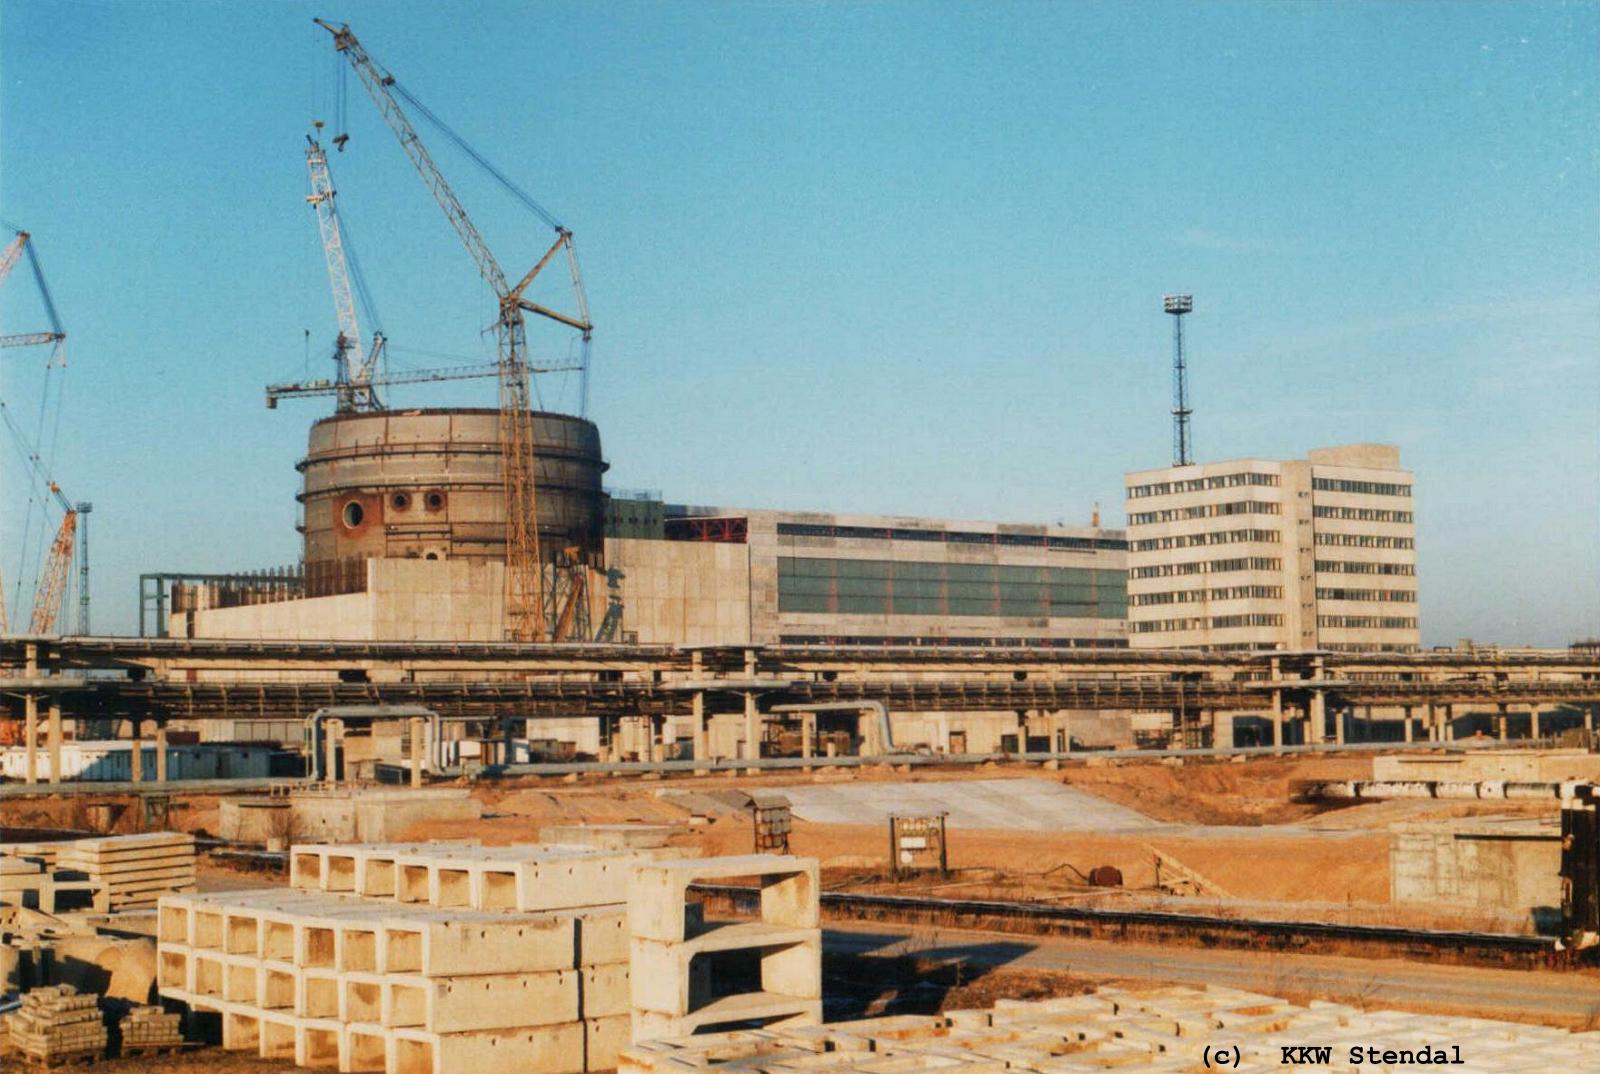  DDR KKW Stendal, Baustelle 1990, links Reaktorgebäude A dann Maschinenhaus A,
 rechts Betriebsgebäude am Reaktor A 